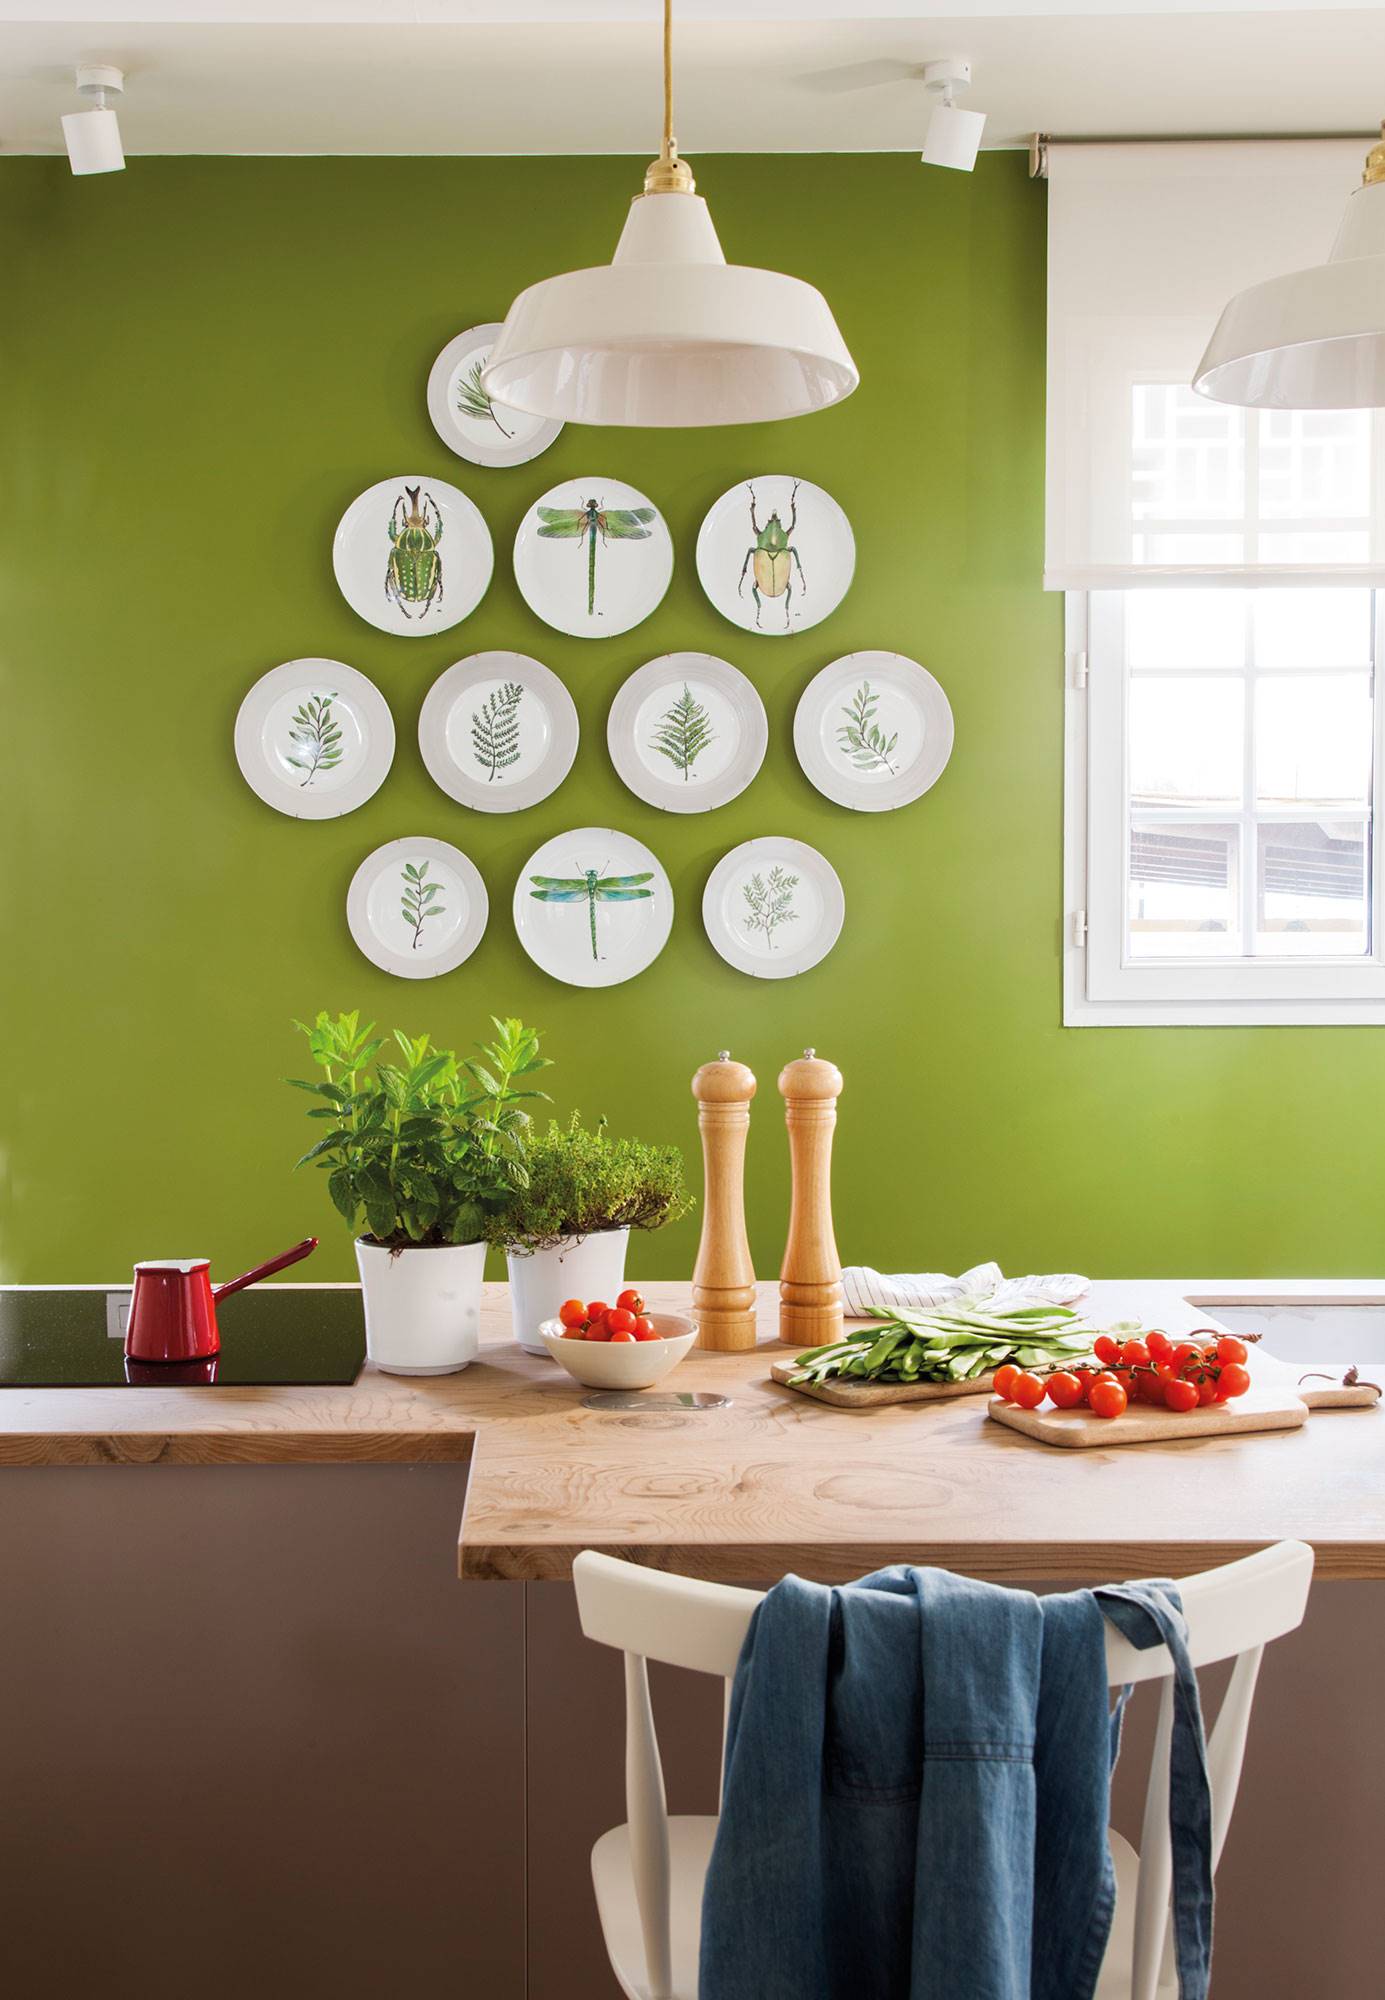 Cocina con pared verde decorada con platos y encimera de madera.